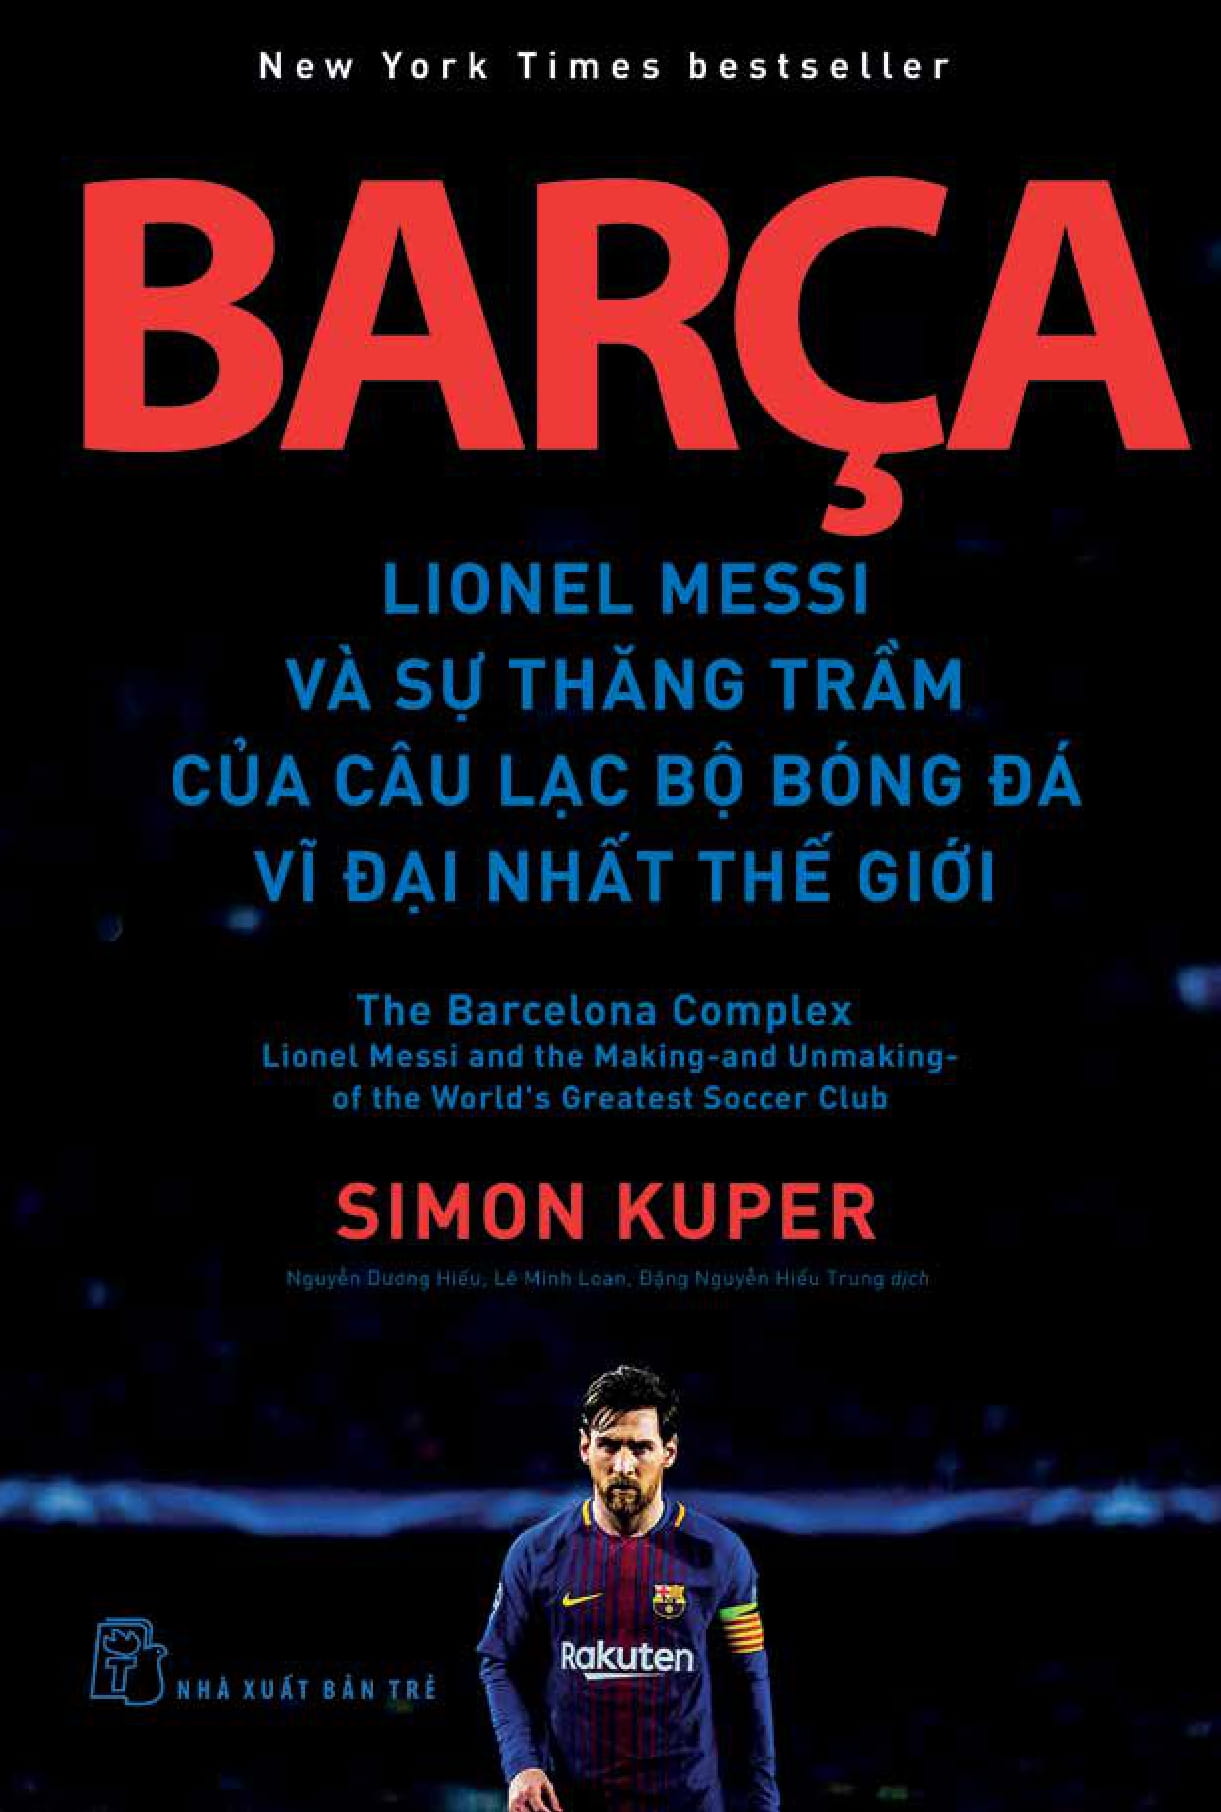 Barça Lionel Messi Và Sự Thăng Trầm Của Câu Lạc Bộ Bóng Đá Vĩ Đại Nhất Thế Giới PDF